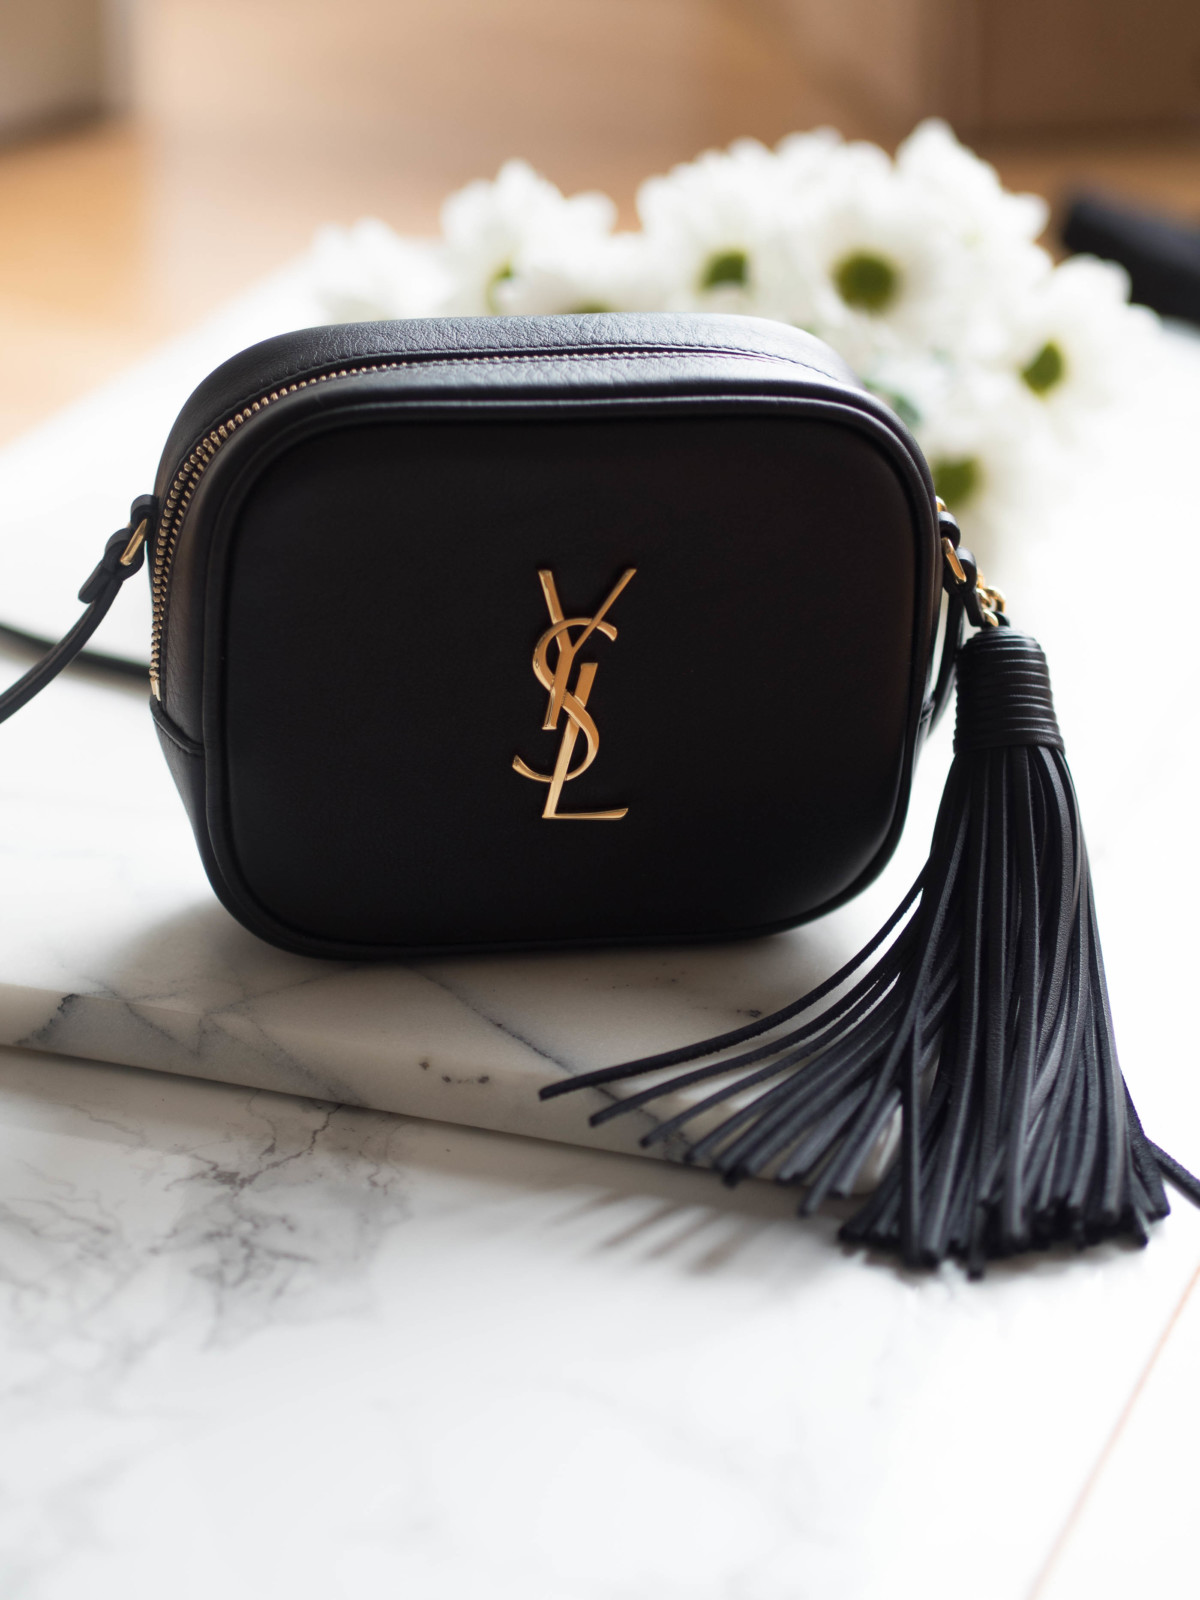 The Blogger Bag by Saint Laurent